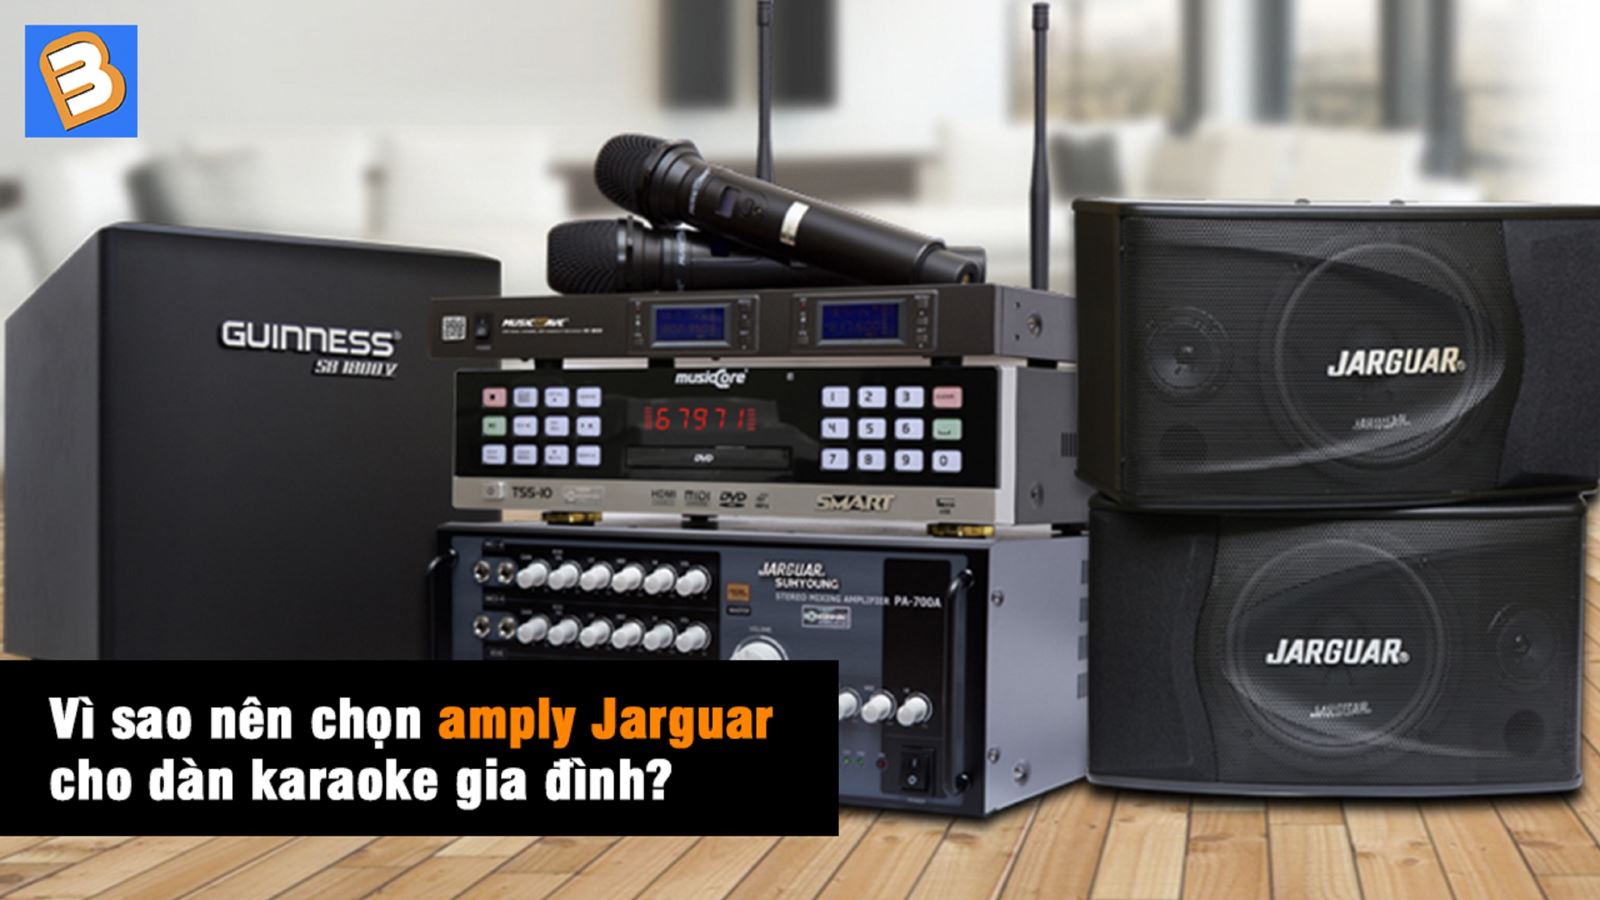 Vì sao nên chọn amply Jarguar cho dàn karaoke gia đình?